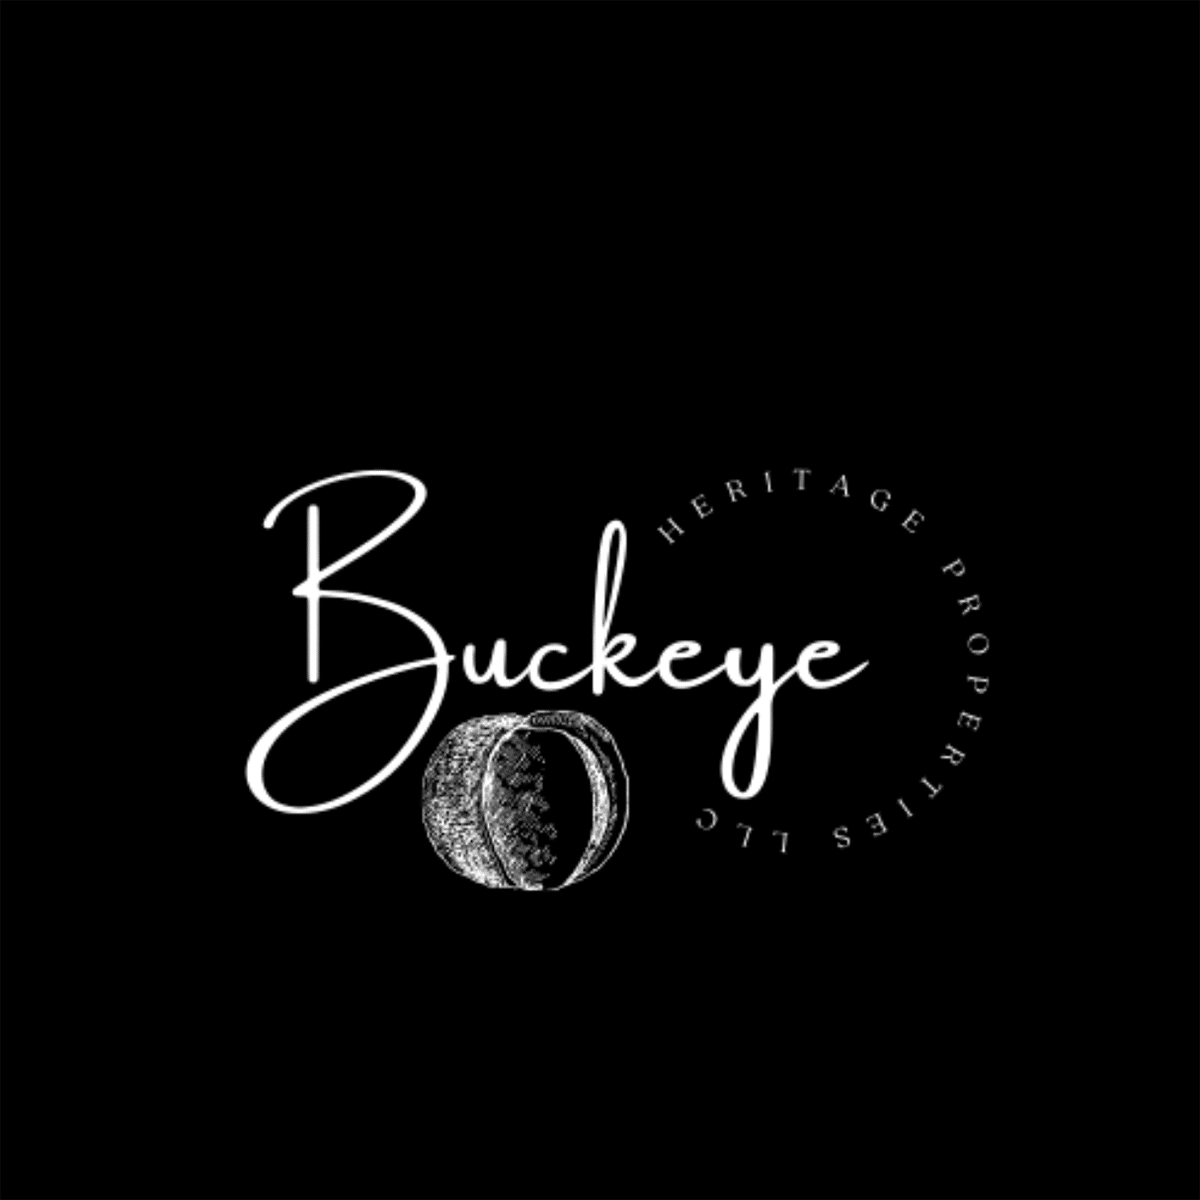 Buckeye Heritage Properties LLC